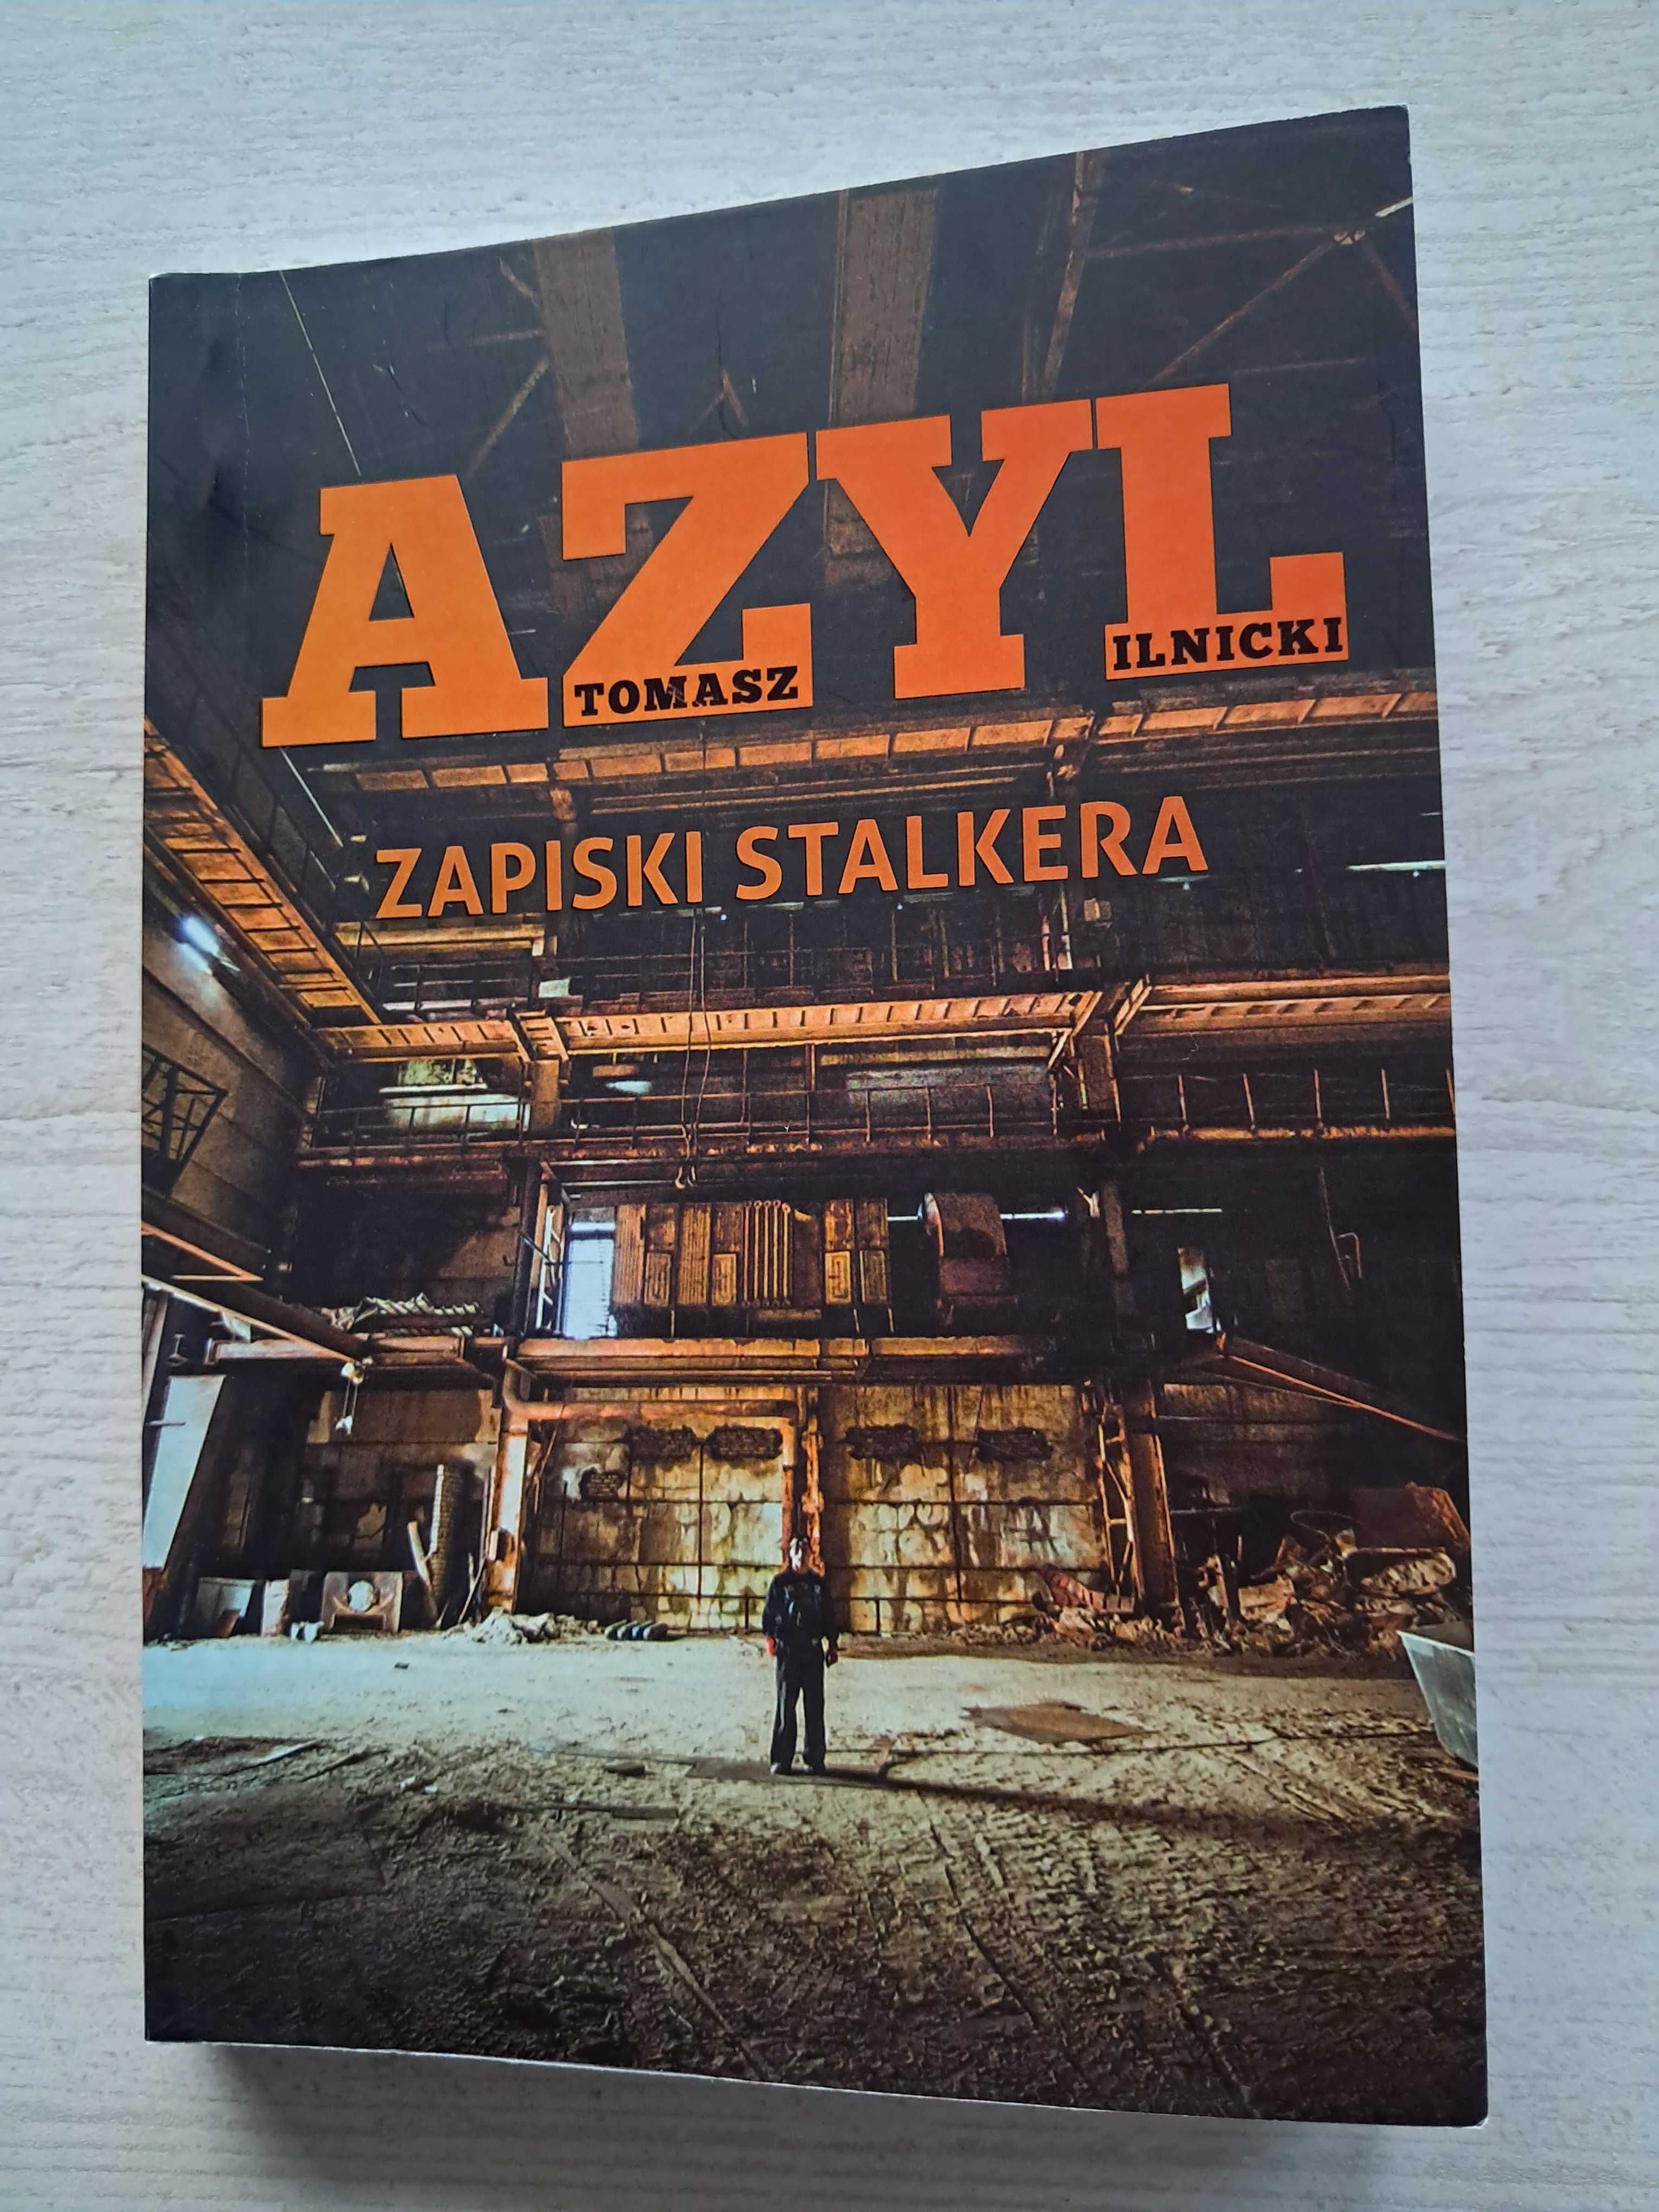 Z autografem "Azyl. Zapiski stalkera" Tomasz Ilnicki